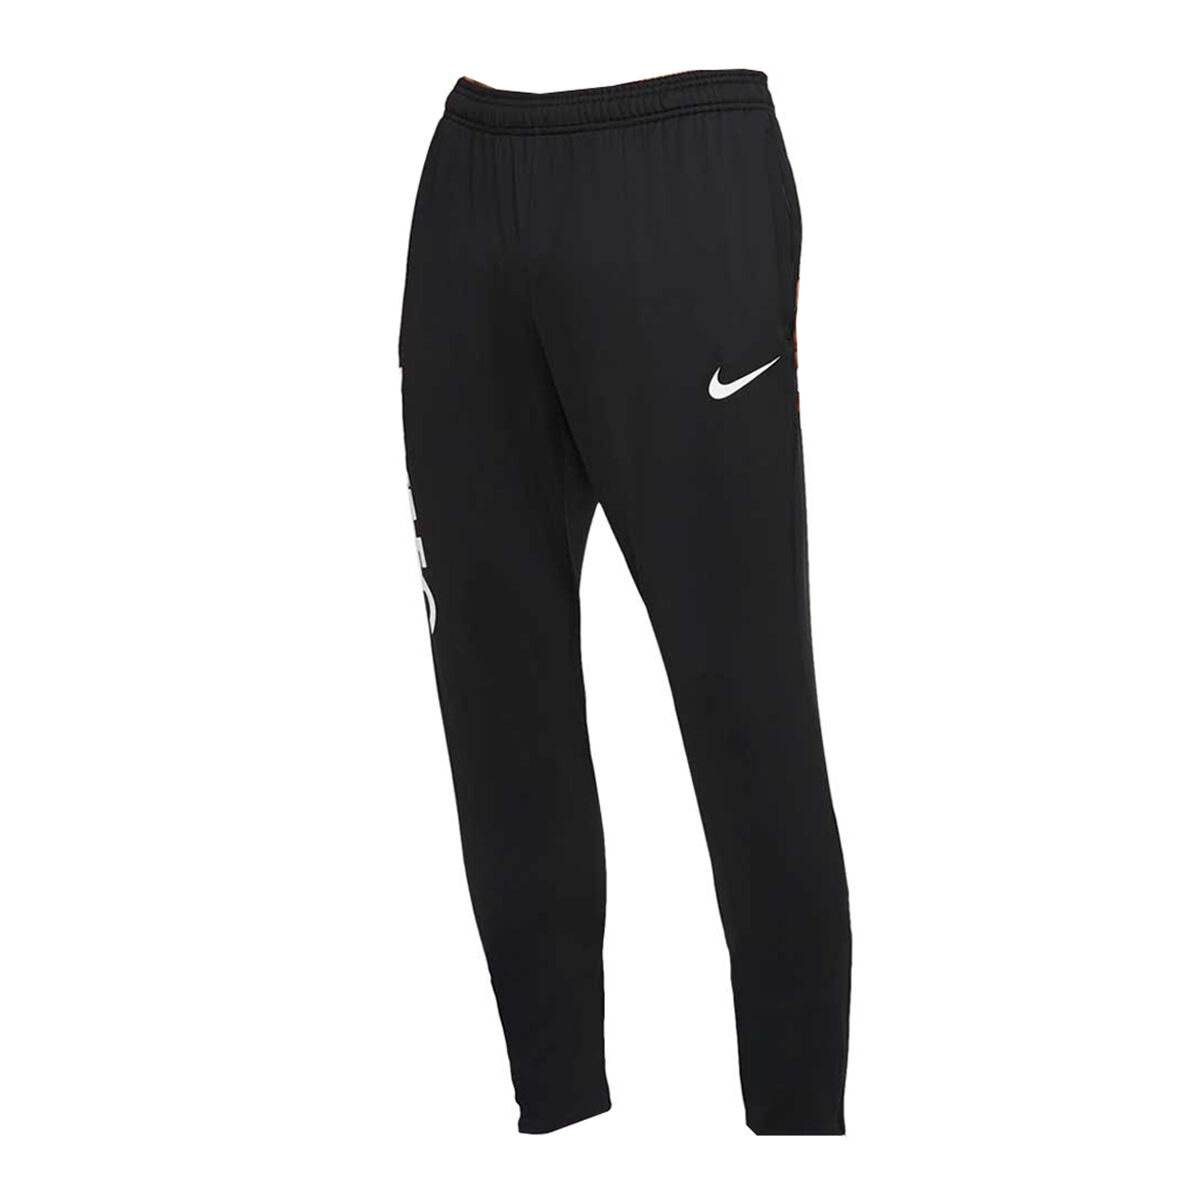 Nike F.C. – Men's Football Pants – TPlus